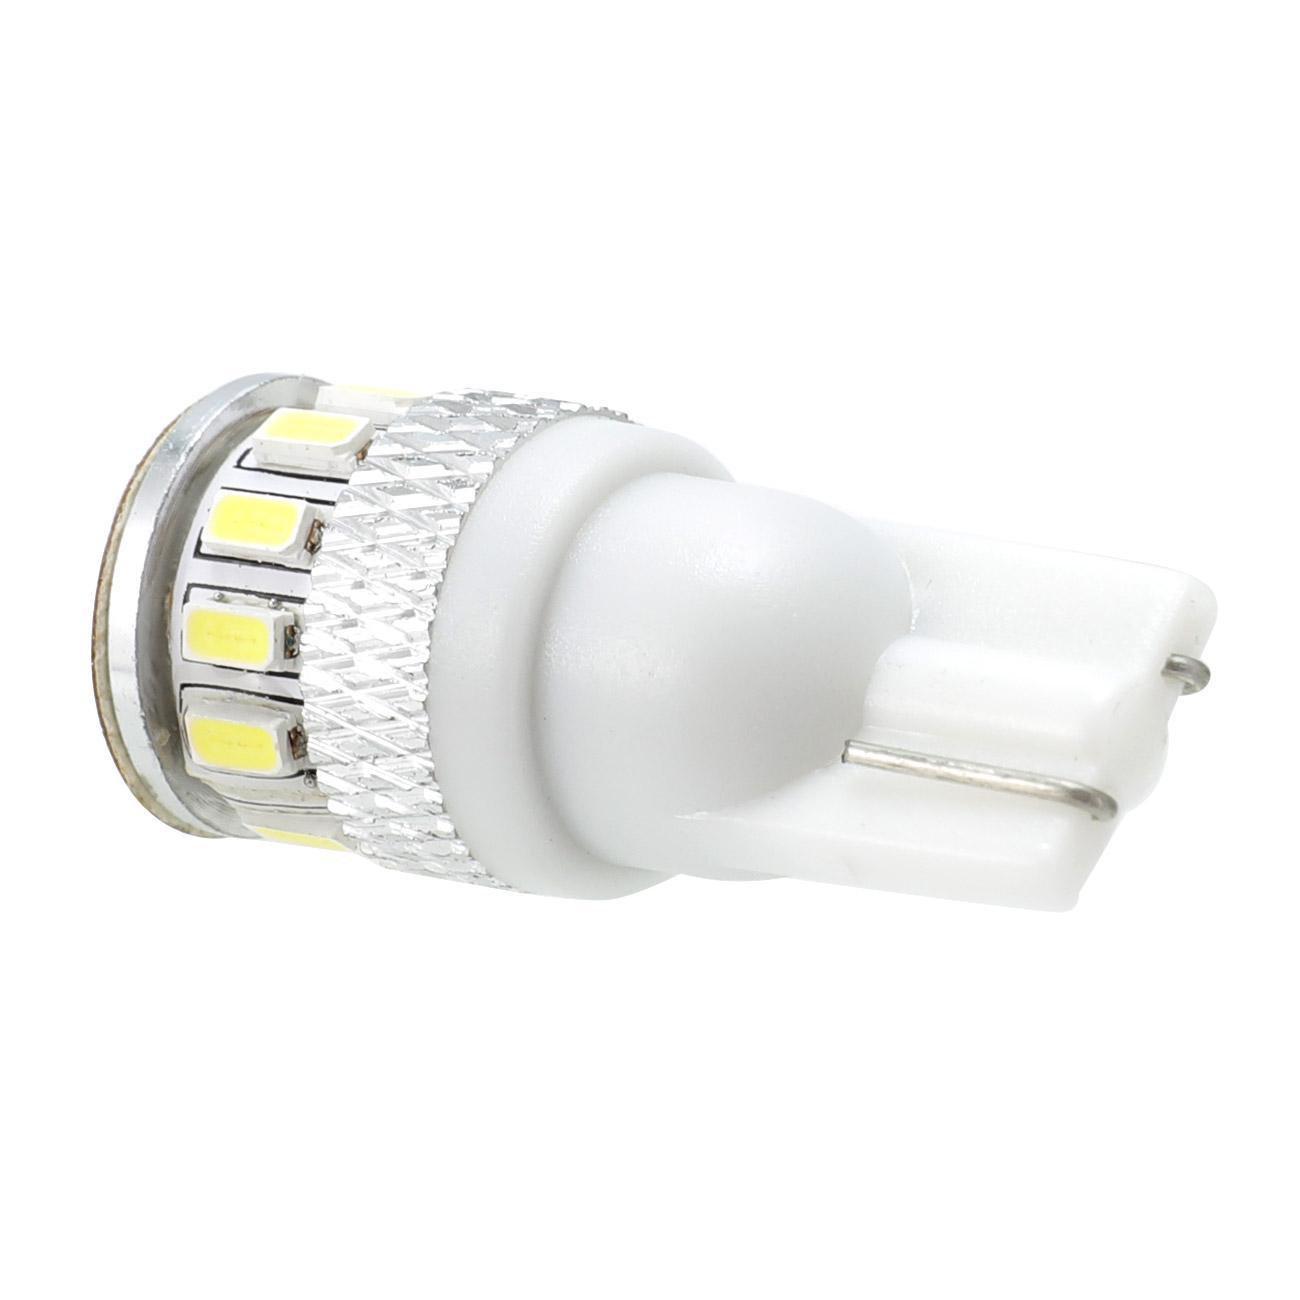 t10 led bulb, w5w bulb, 194 led bulb, t10 bulb, w5w led bulb, 501 bulb, t10 light bulb, 168 led bulb, 194 light bulb